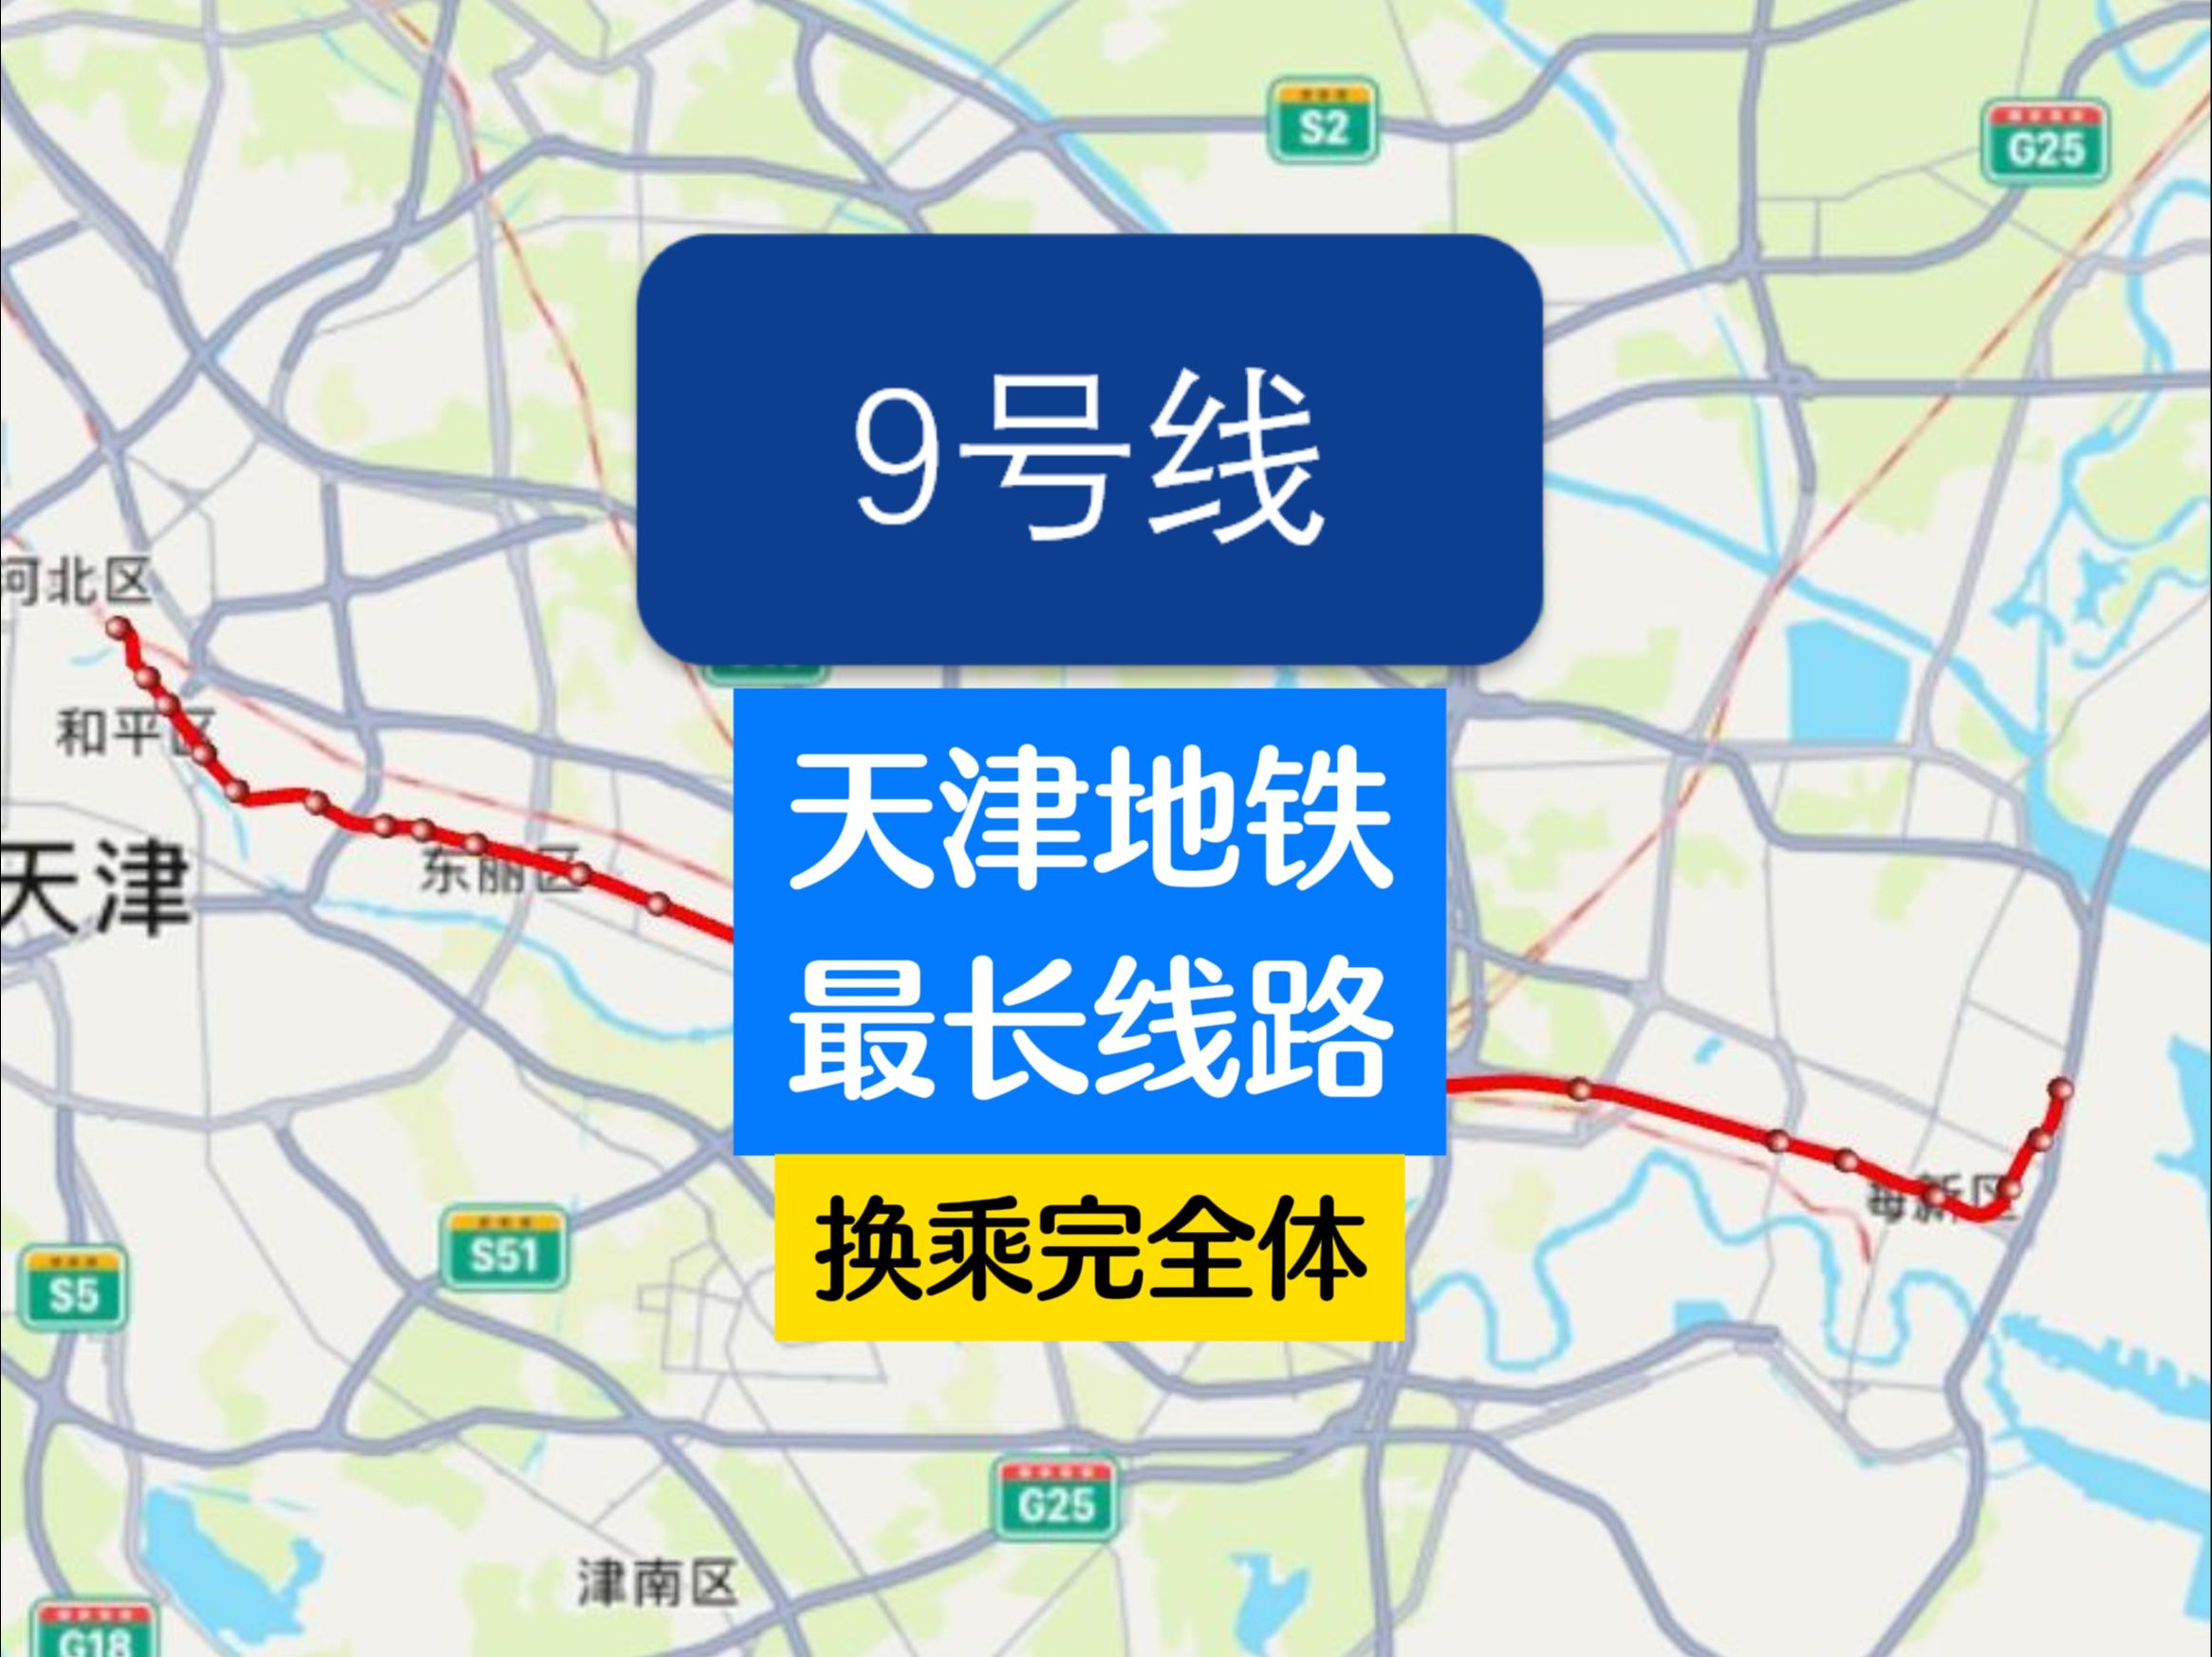 天津地铁最长线路9号线换乘完全体